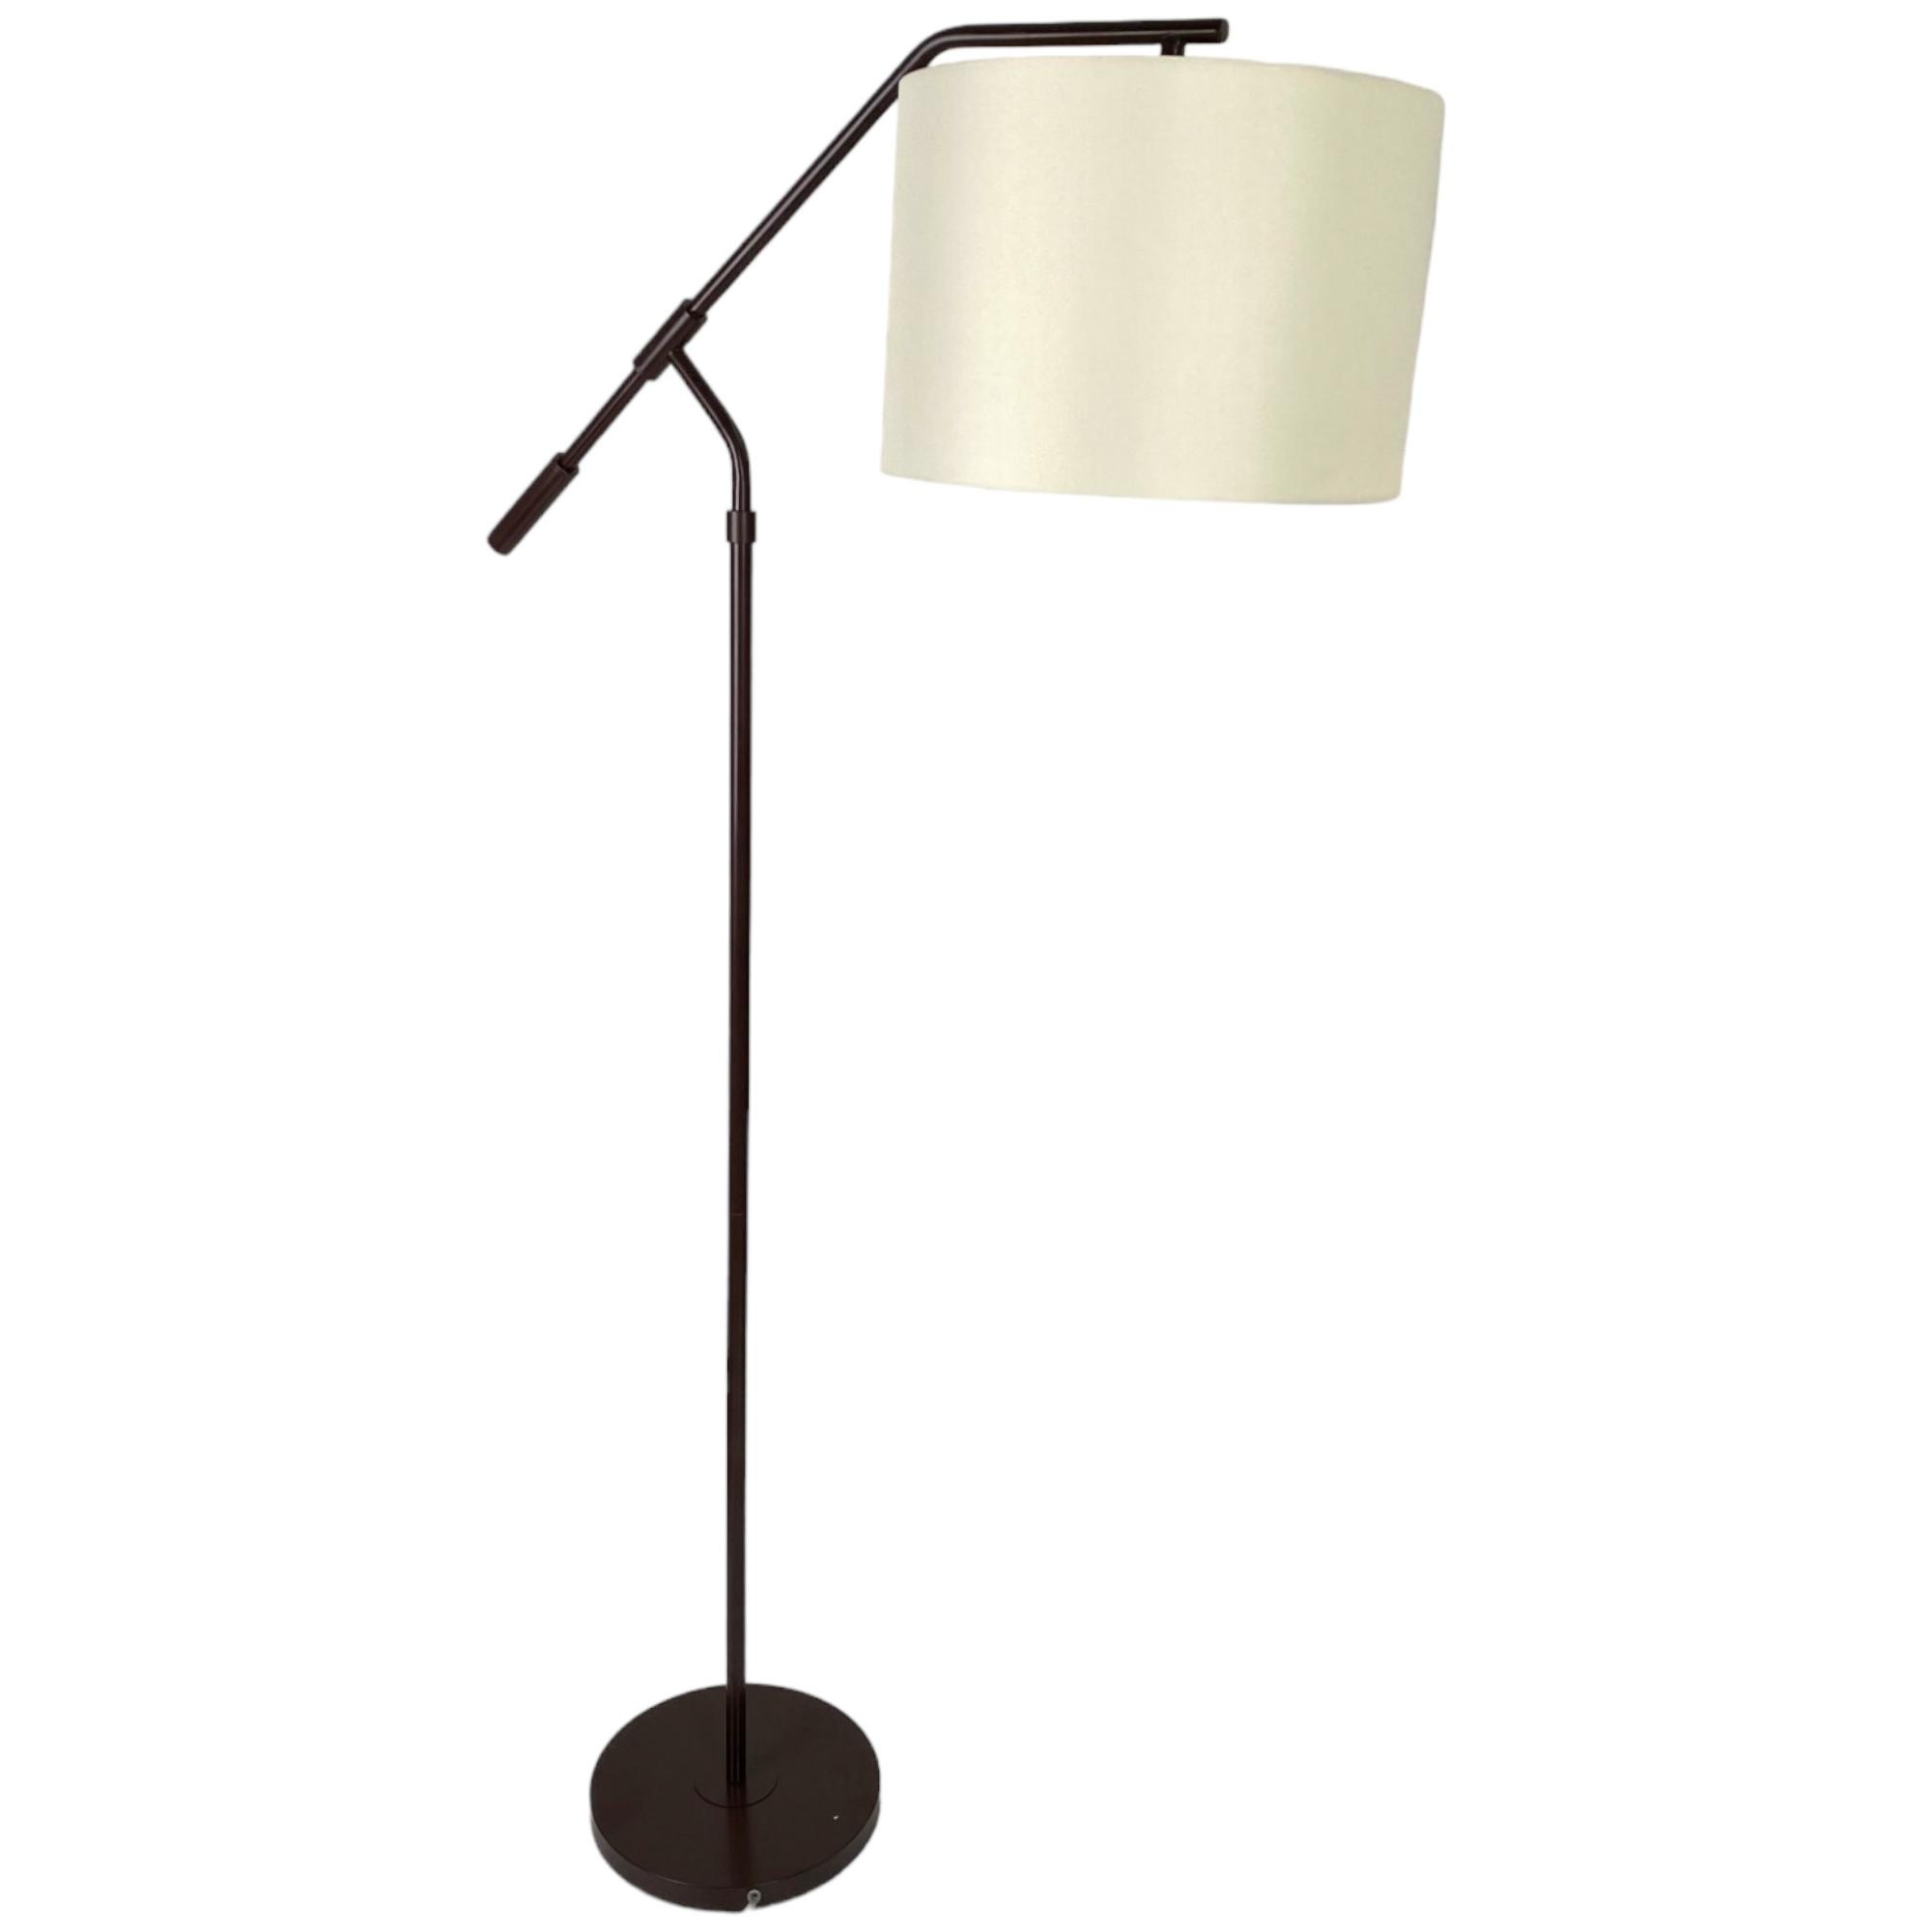 FLOOR LAMP - 541-780009/1